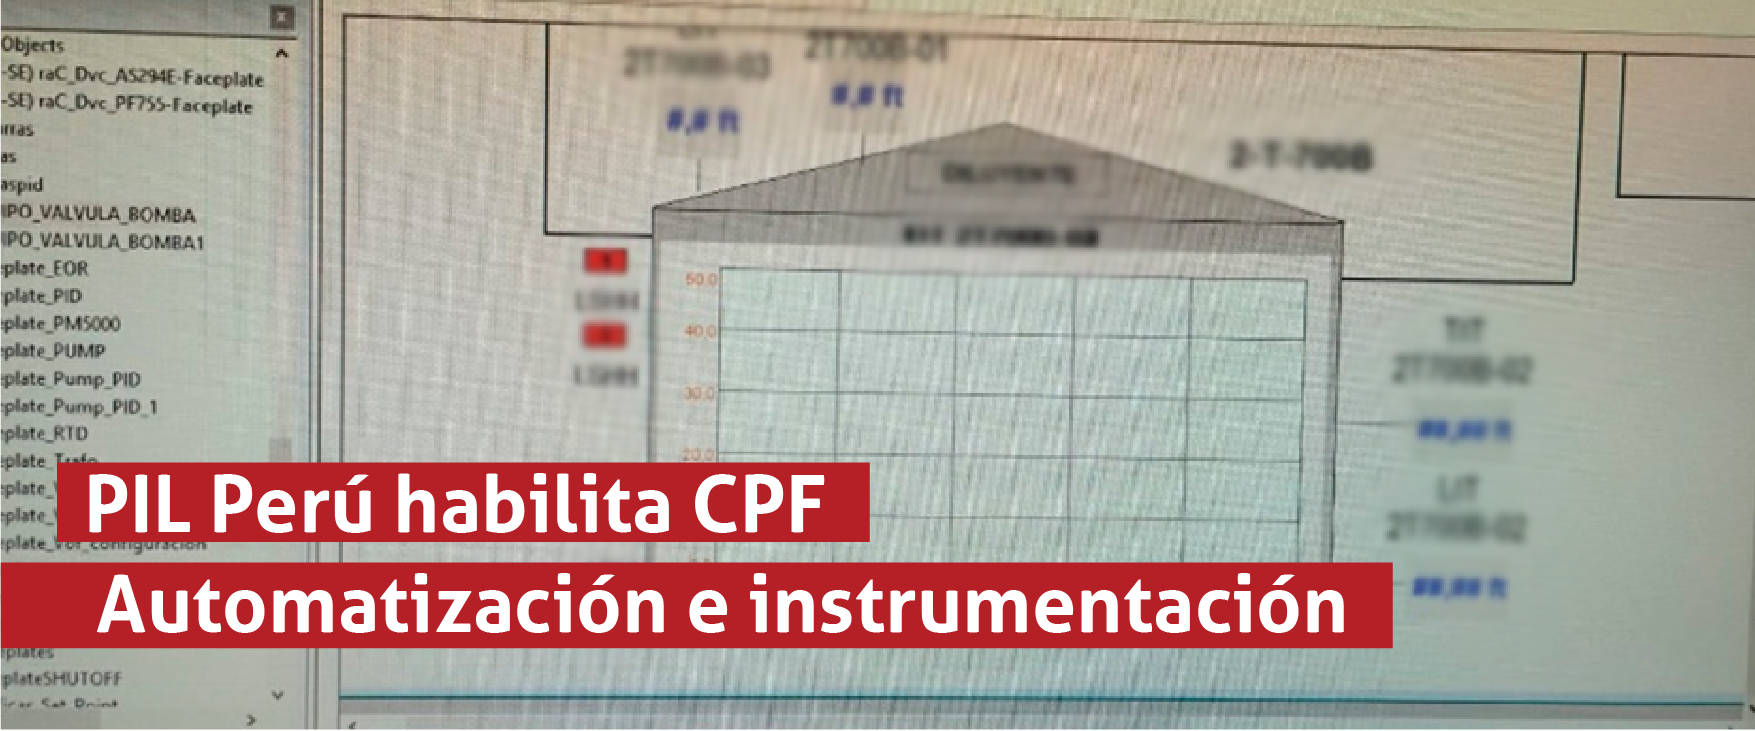 PIL Perú habilita CPF - Automatización e instrumentación